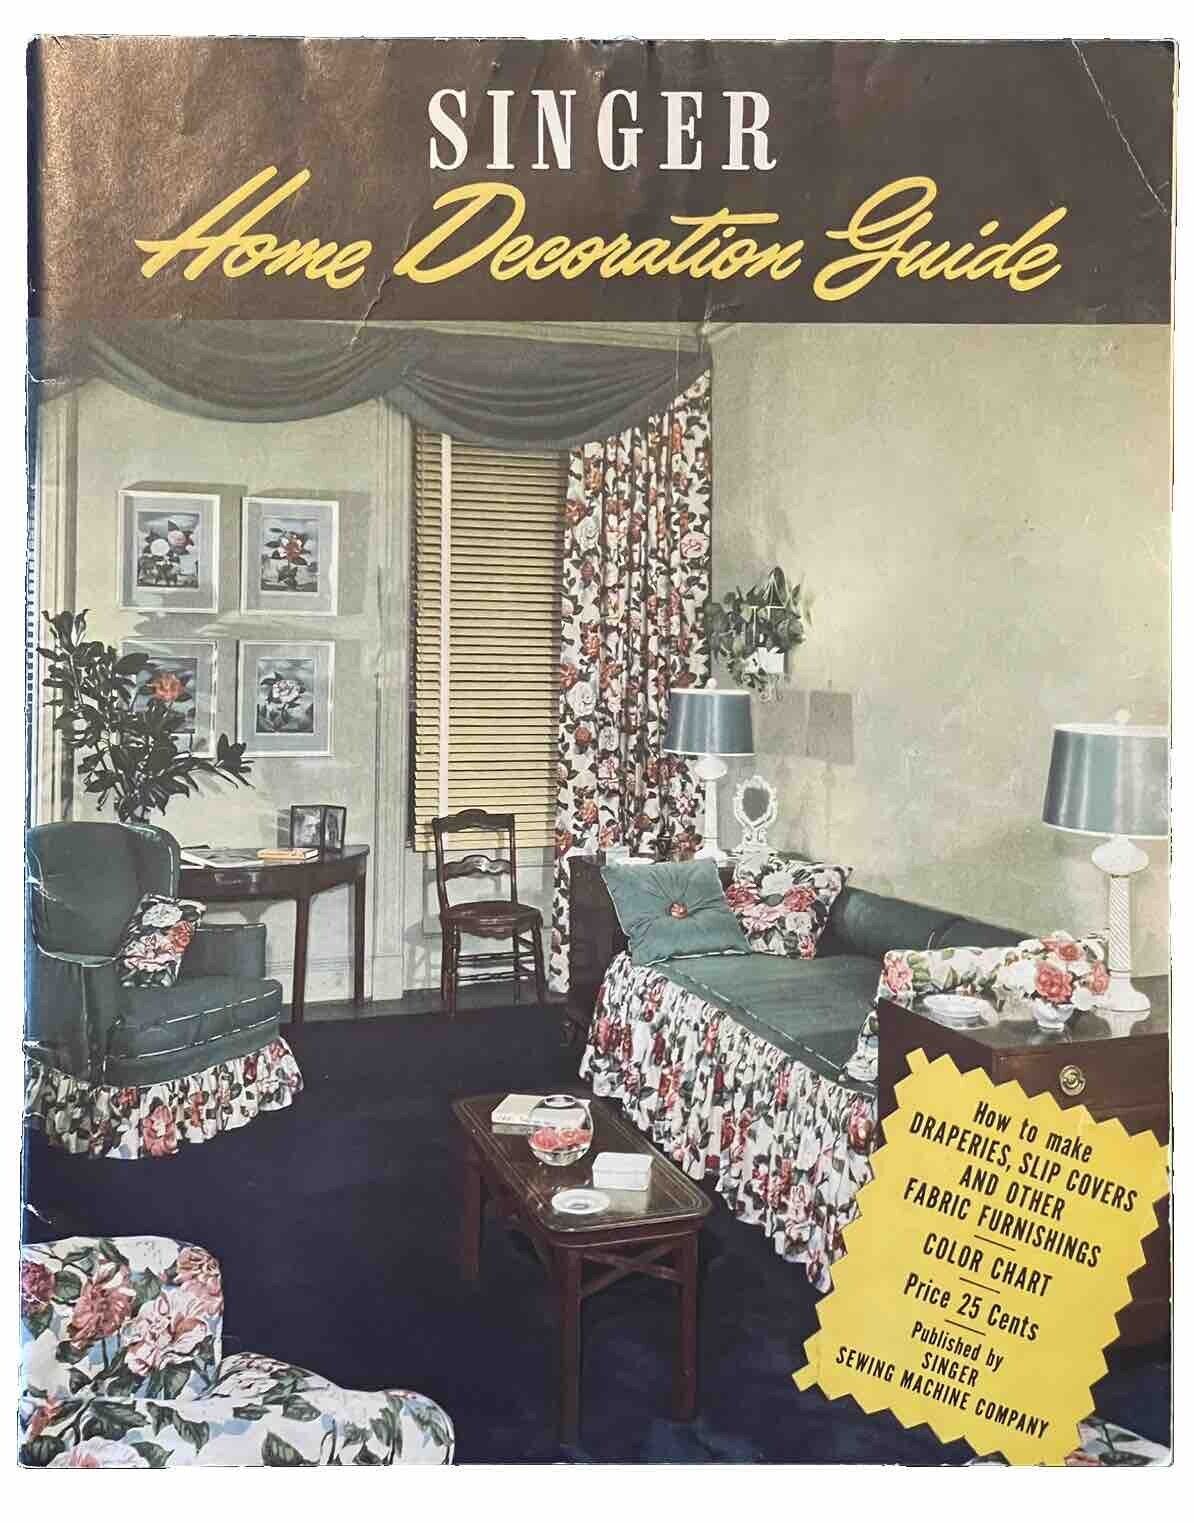 Vintage Singer Home Decoration Guide 1947